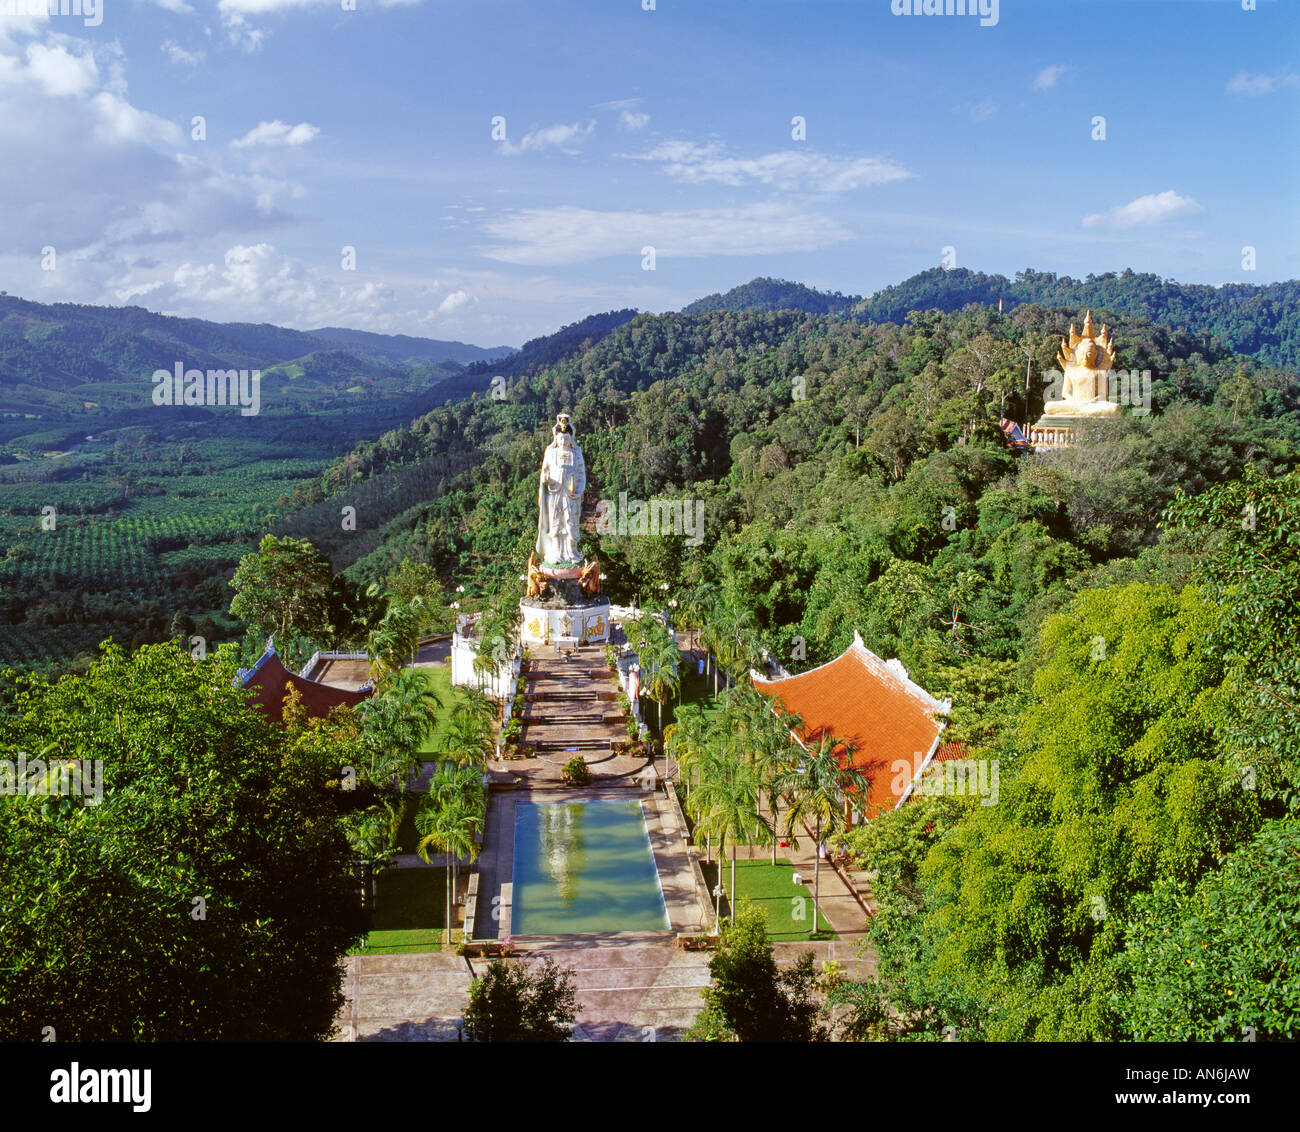 Tempelanlage von Wat Bang Rian bei Krabi temple site of Wat Bang Rian Thailand Stock Photo